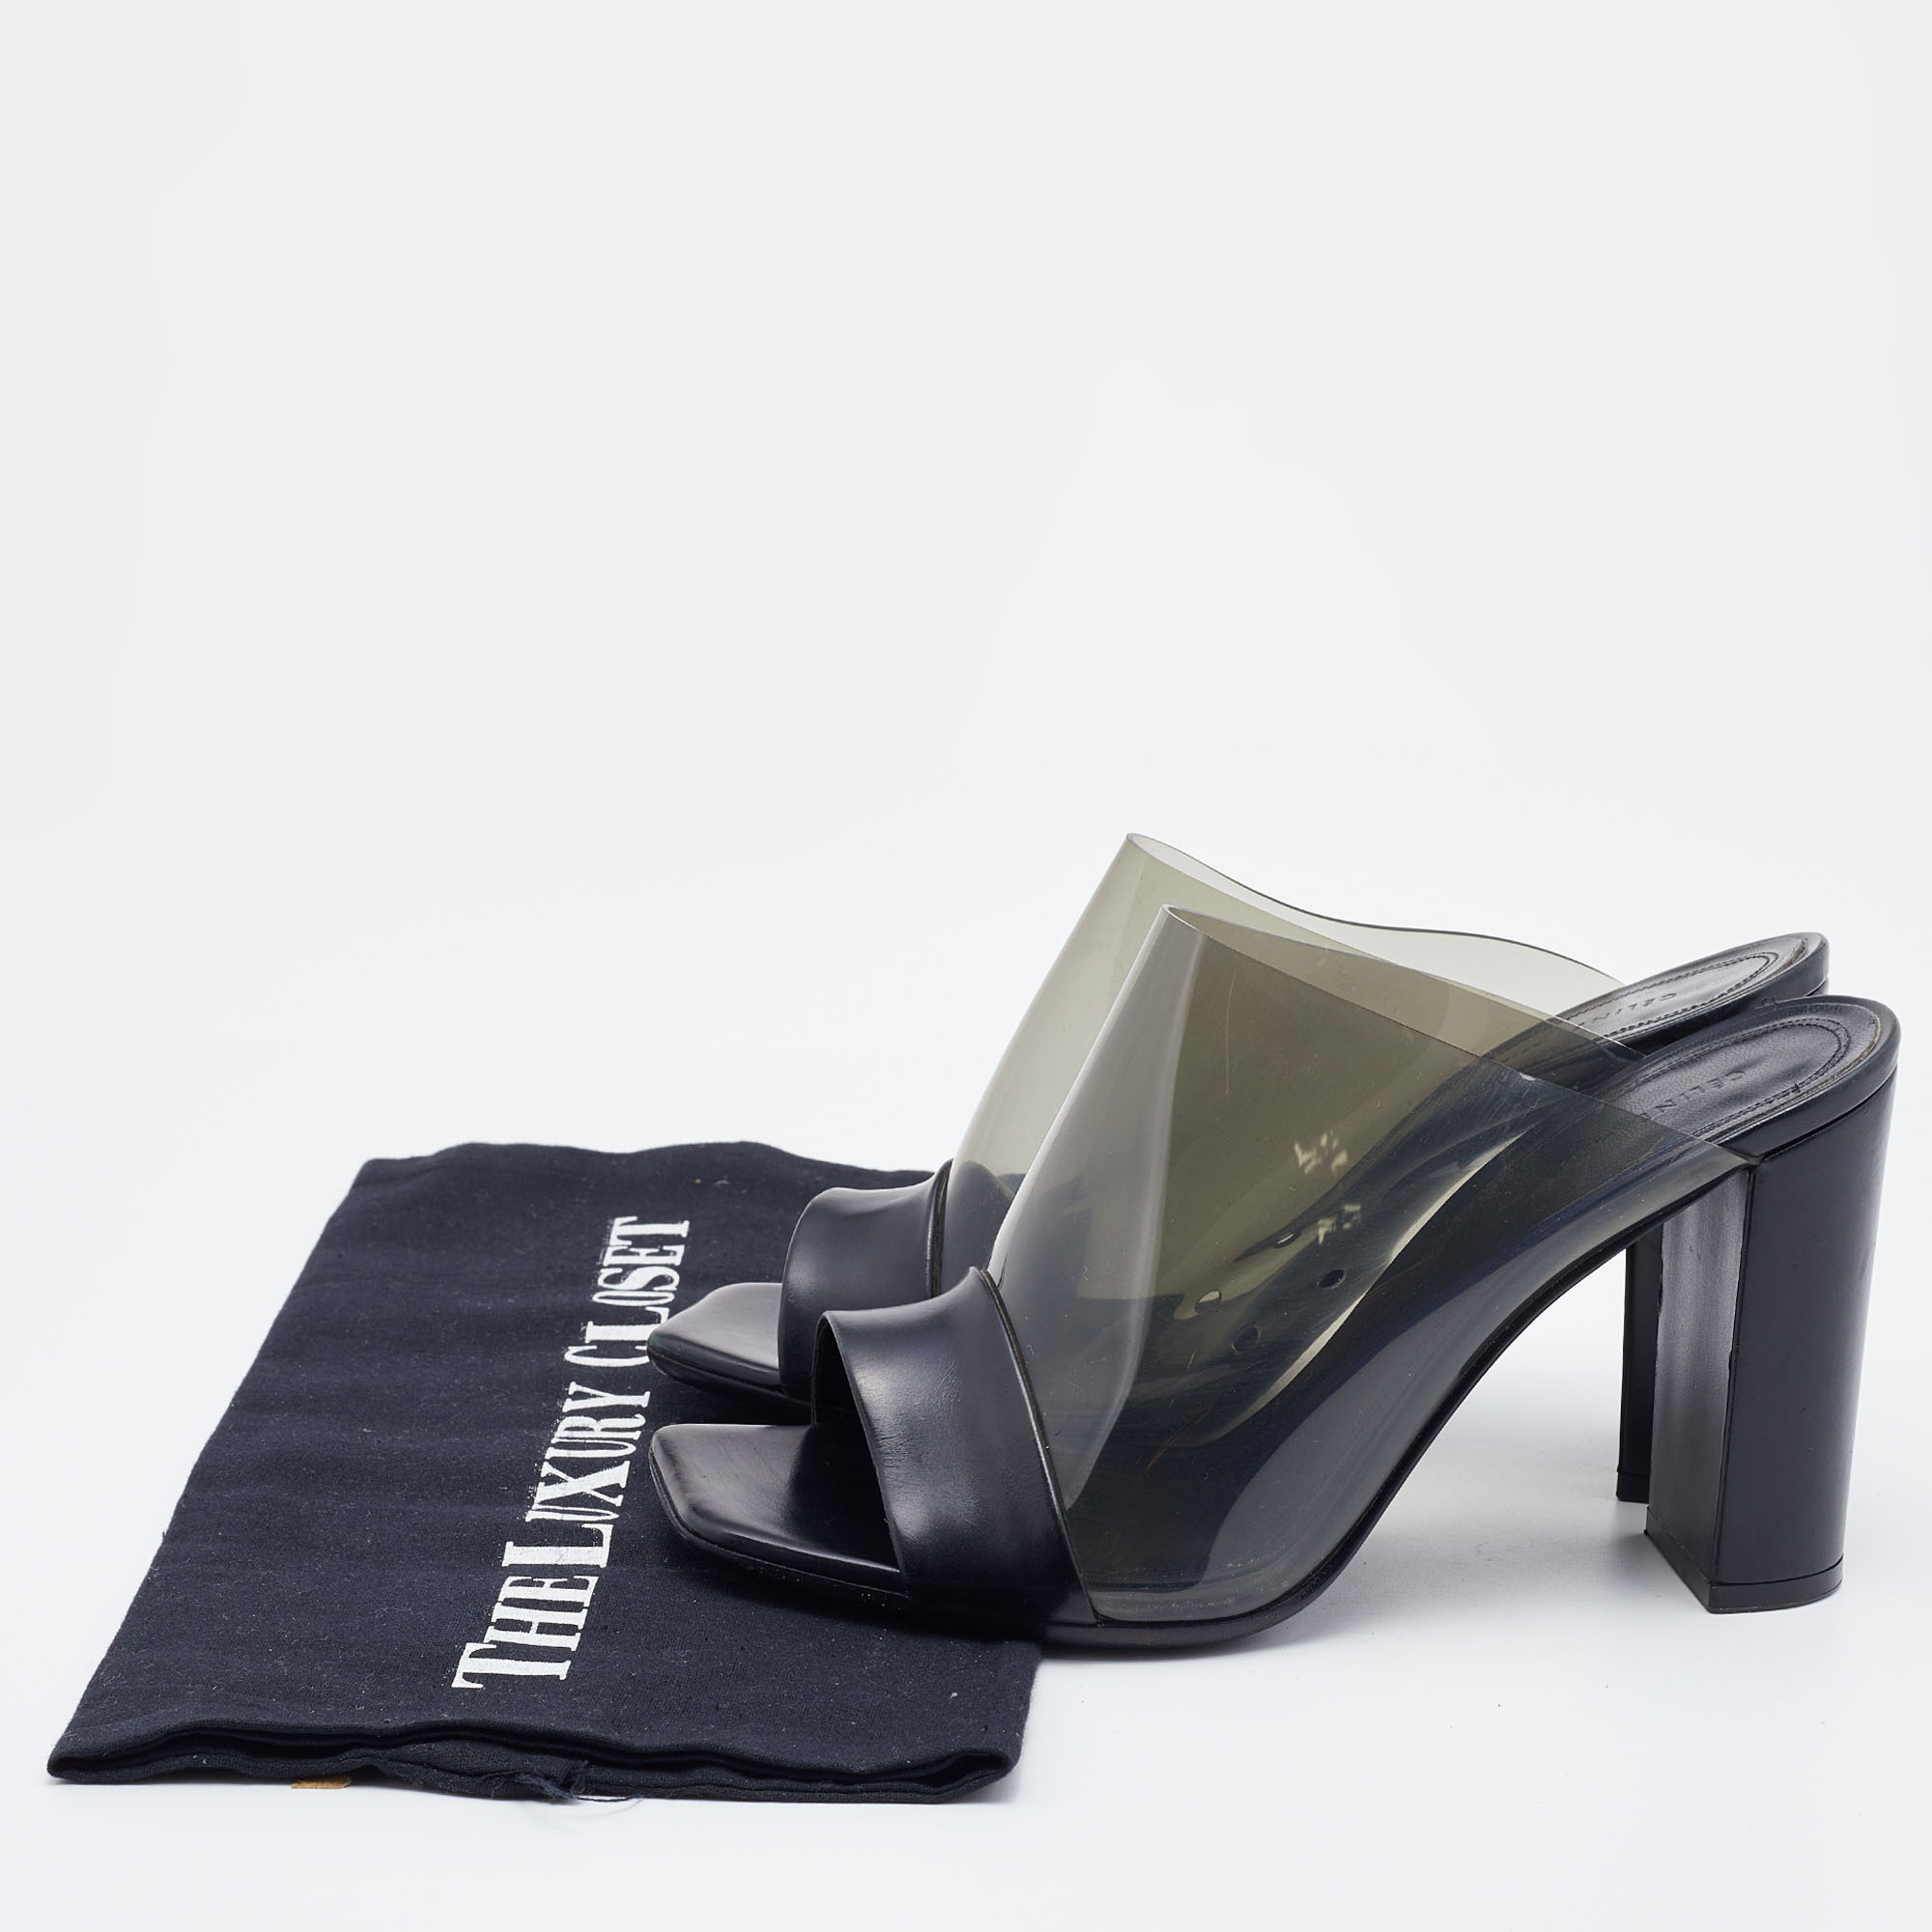 Celine Black Leather And PVC Slide Sandals Size 37